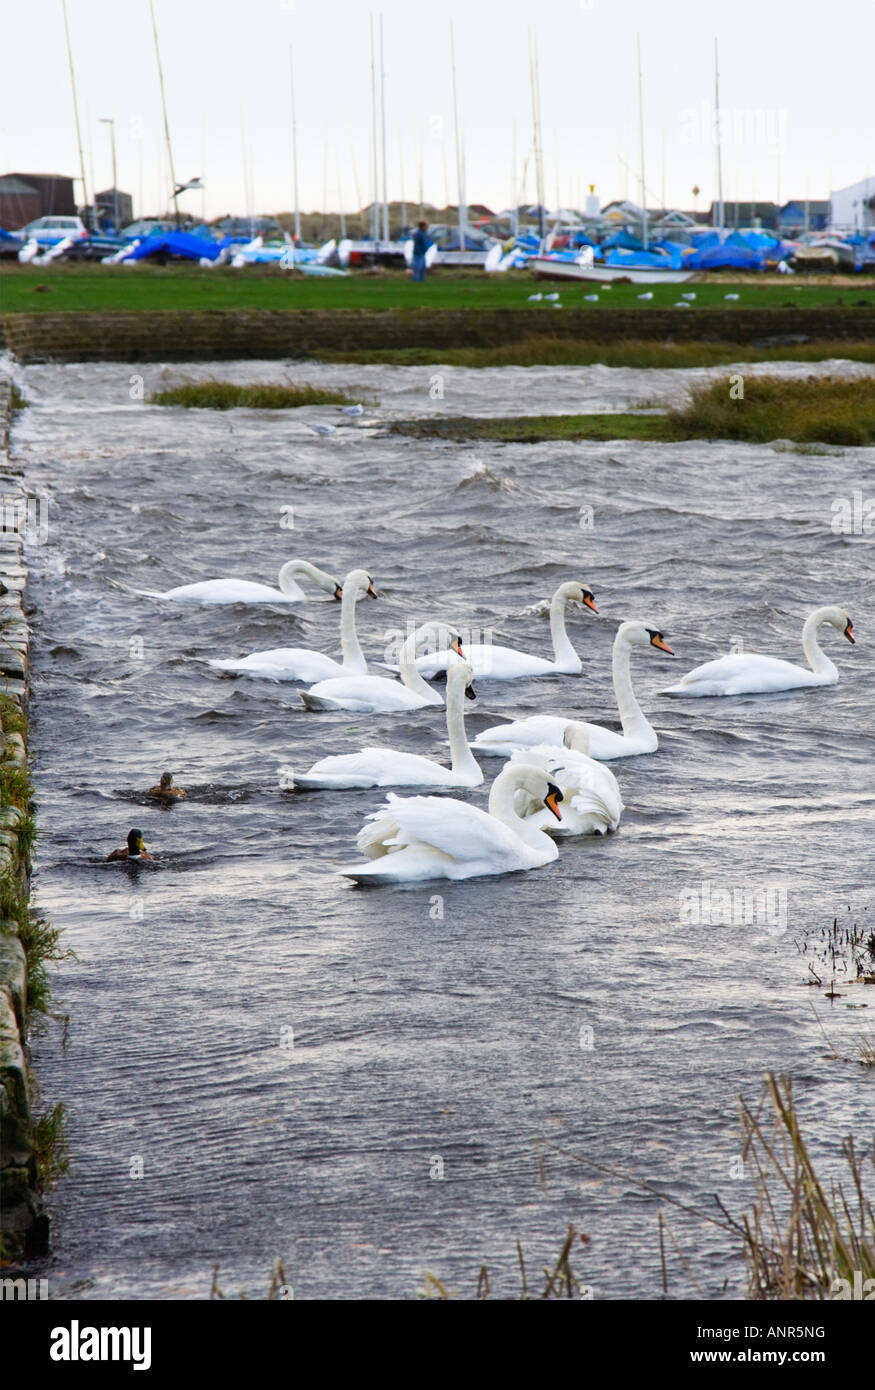 Eine Gruppe von Wwans und Enten schwimmen gegen Sommer Flut Wasser bei Mudeford, Christchurch, Dorset. VEREINIGTES KÖNIGREICH. Fluß Avon. Stockfoto